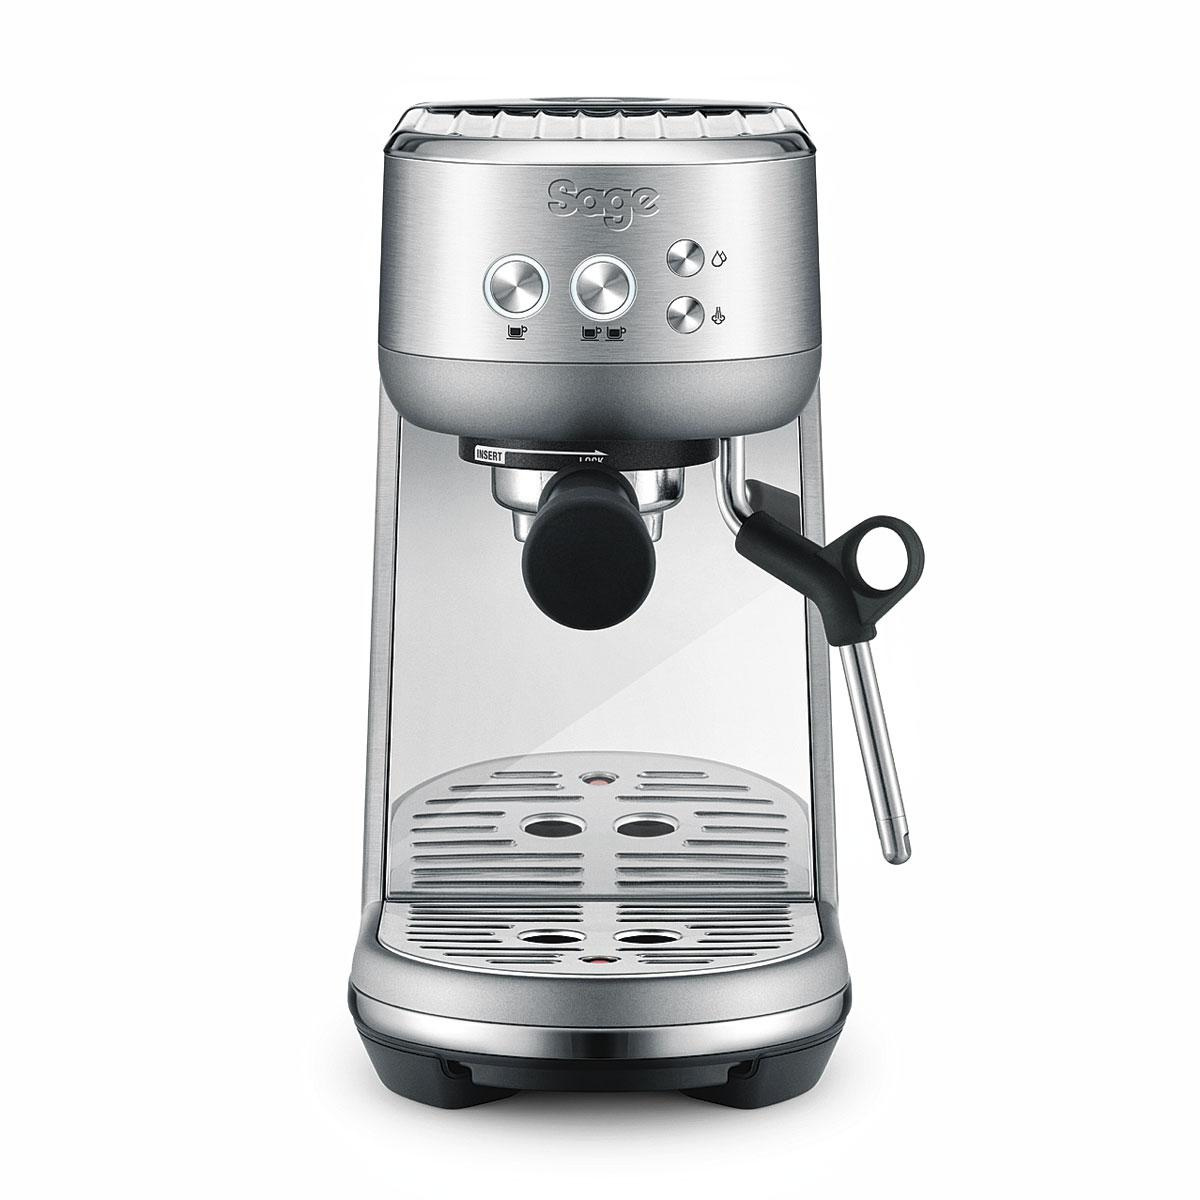 Une machine à expresso Bambino pour faire du café à la maison comme un barista professionnel, , SDP